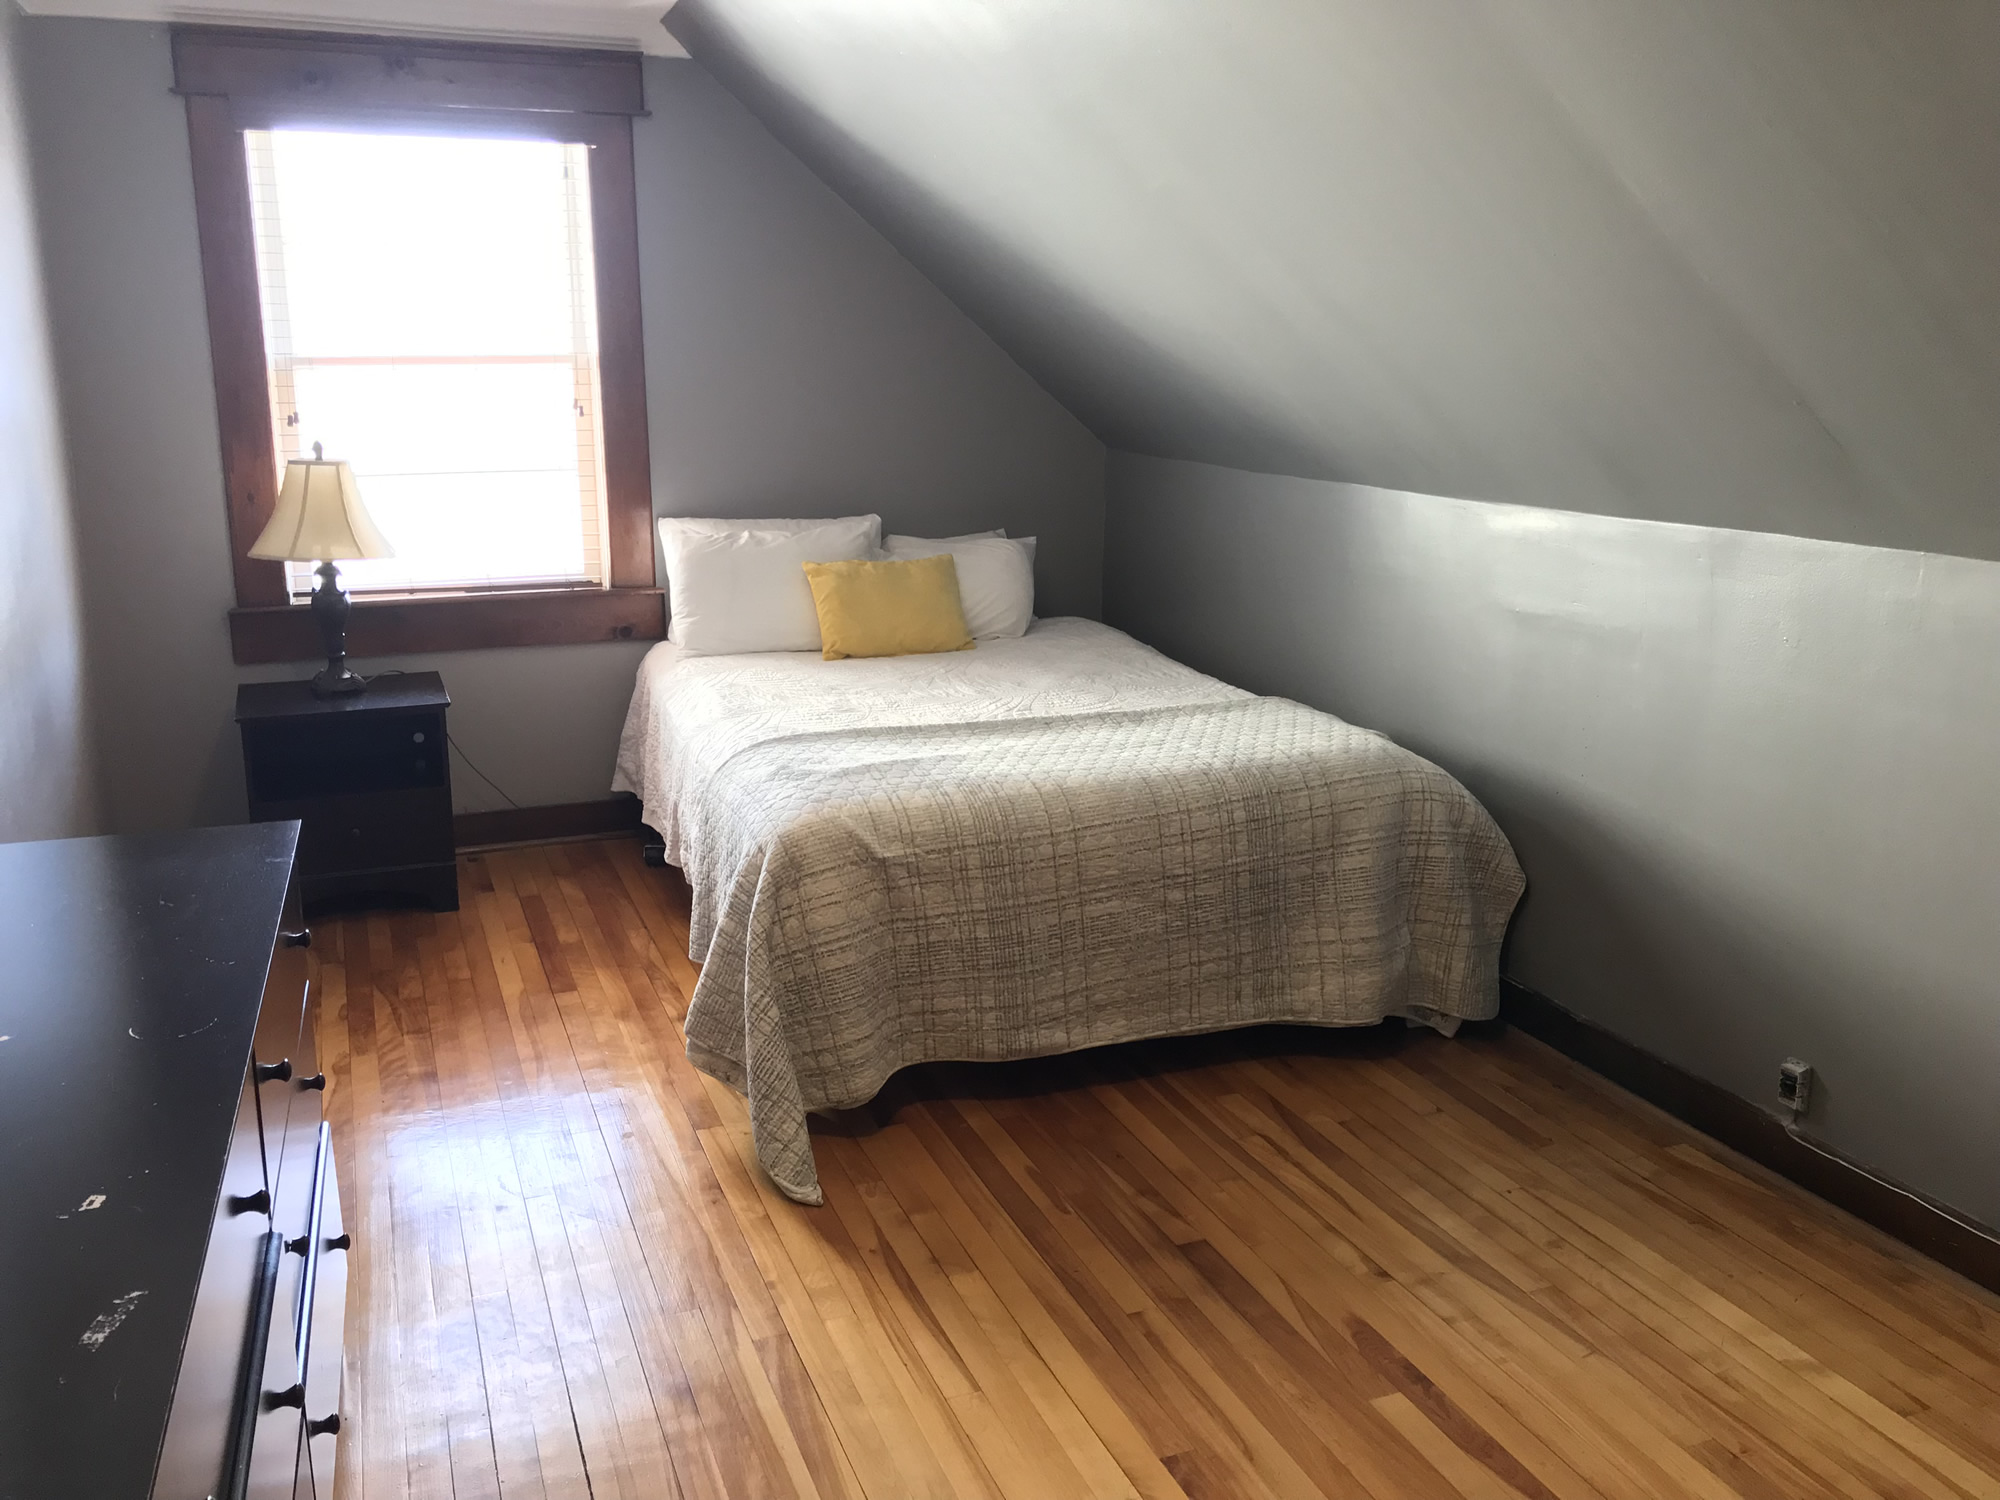 Unit 5 - 3 Bedroom apartment